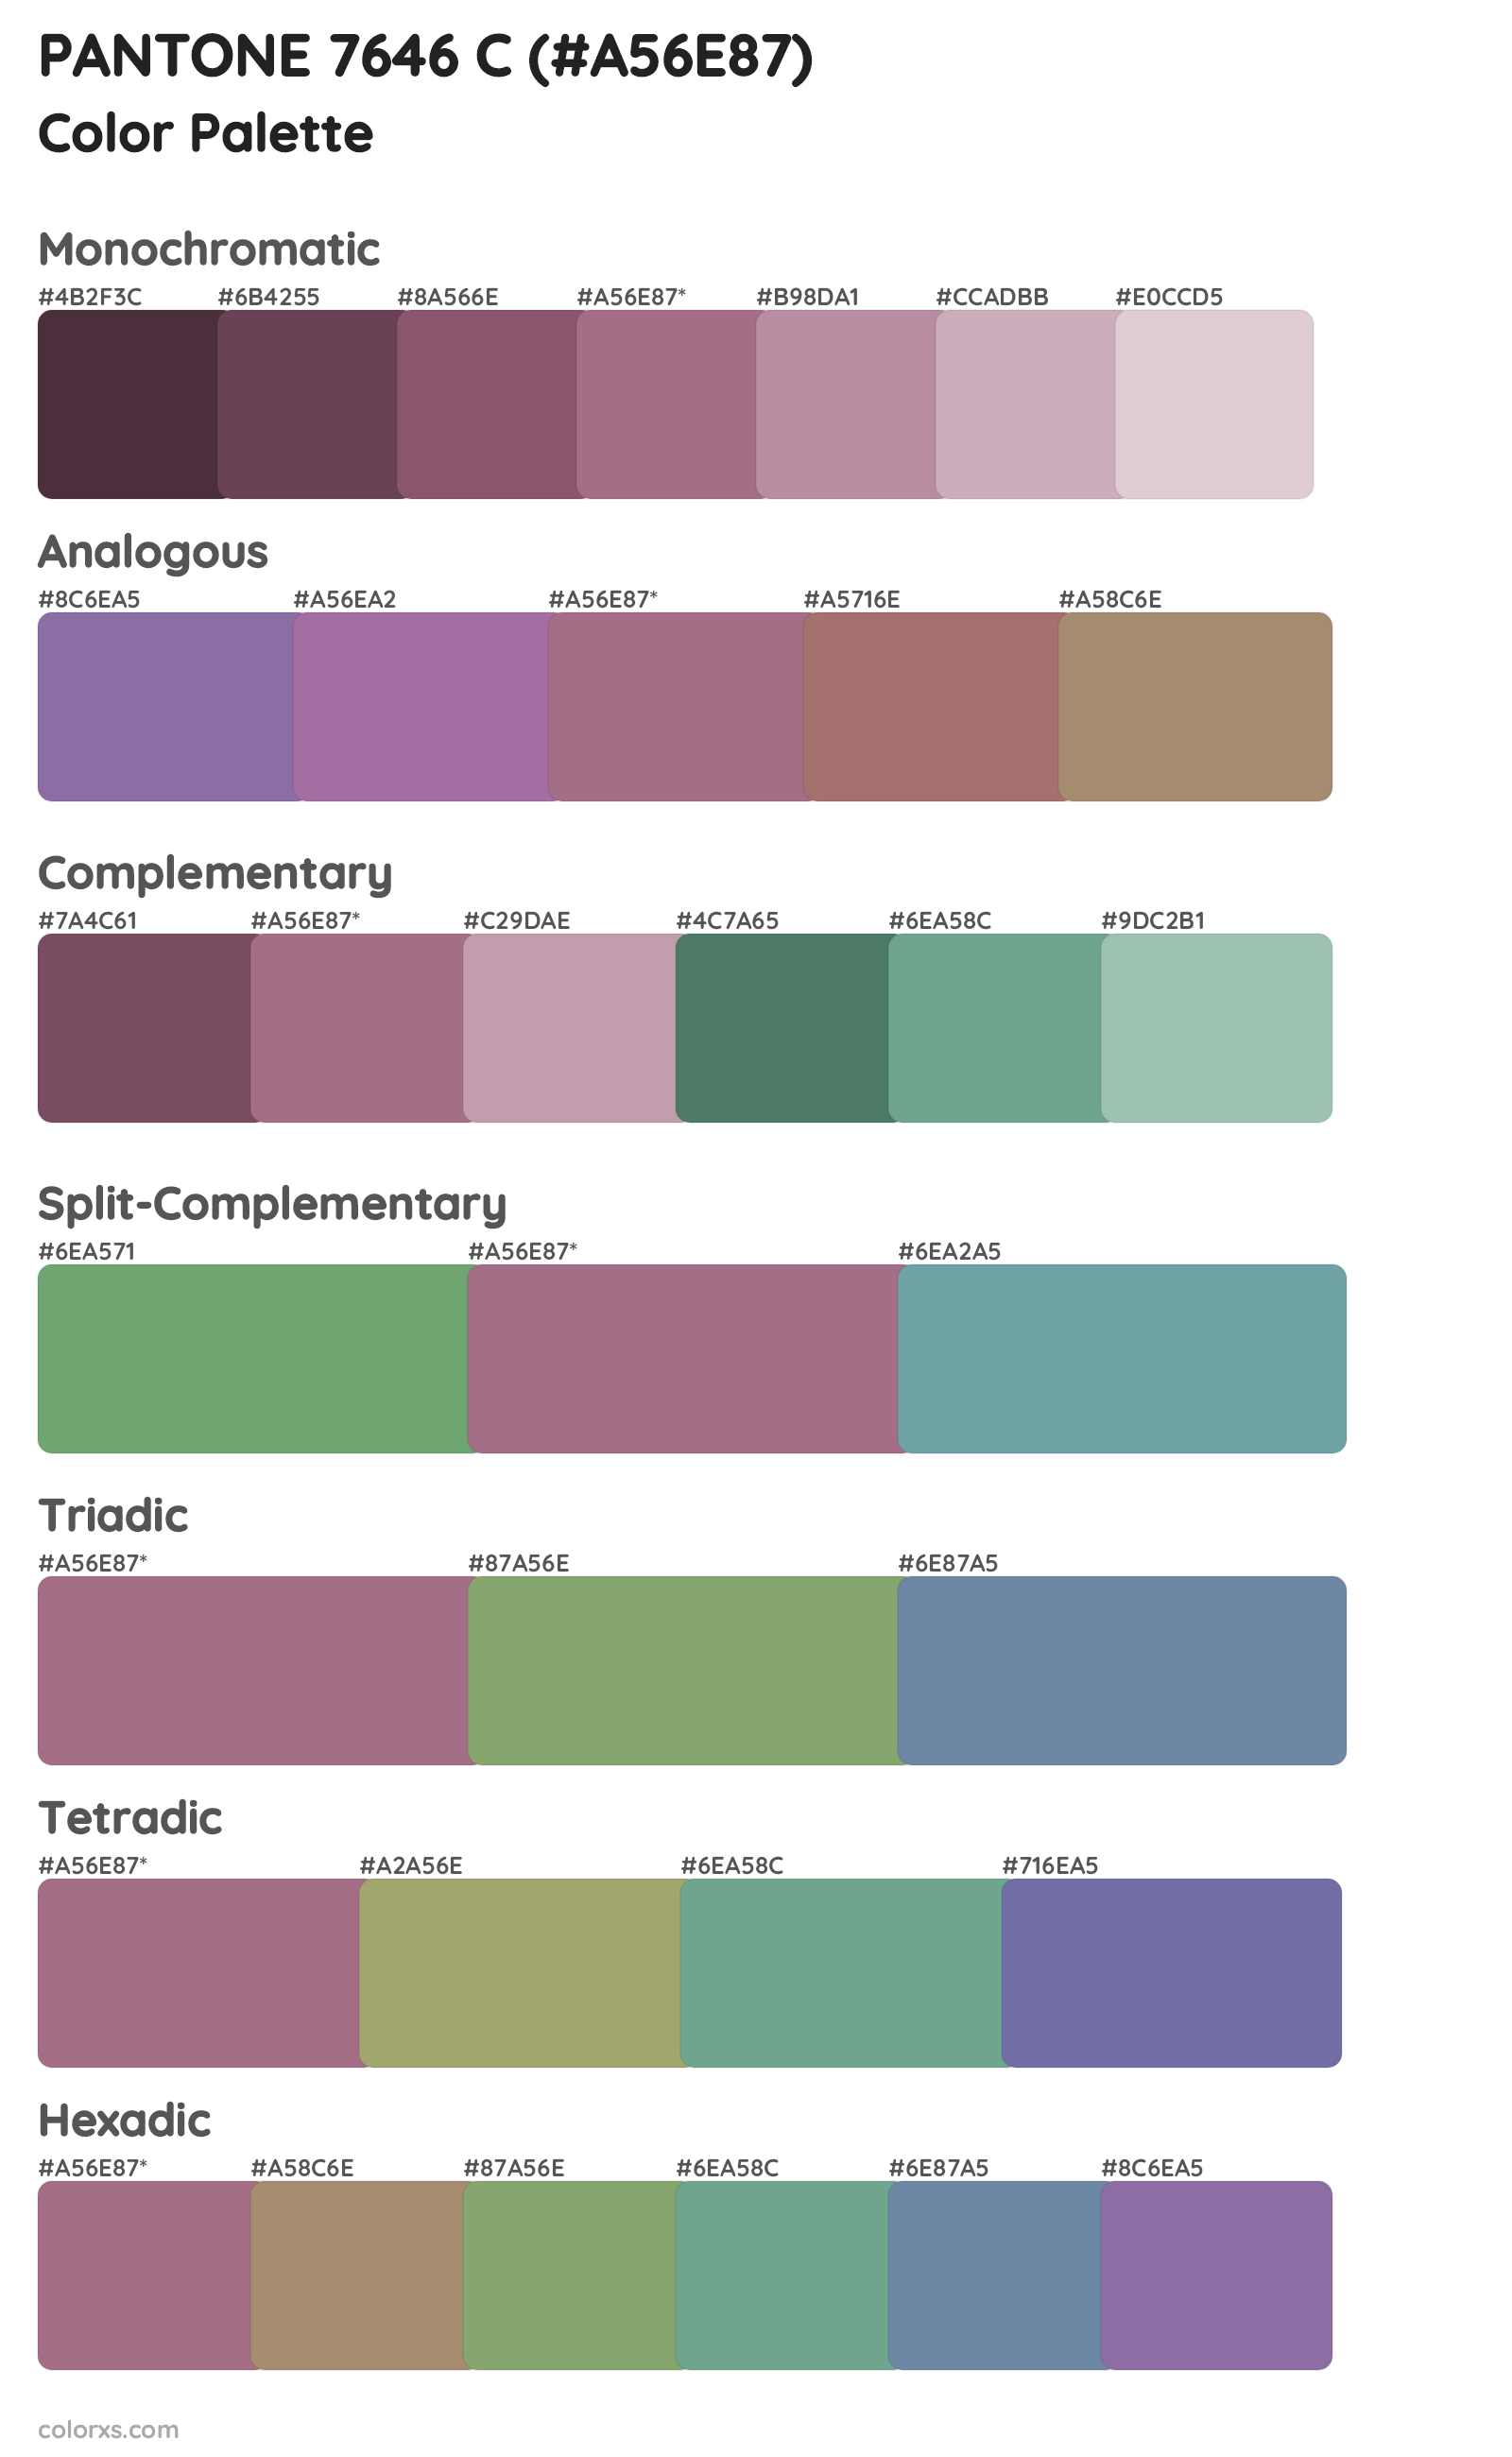 PANTONE 7646 C Color Scheme Palettes